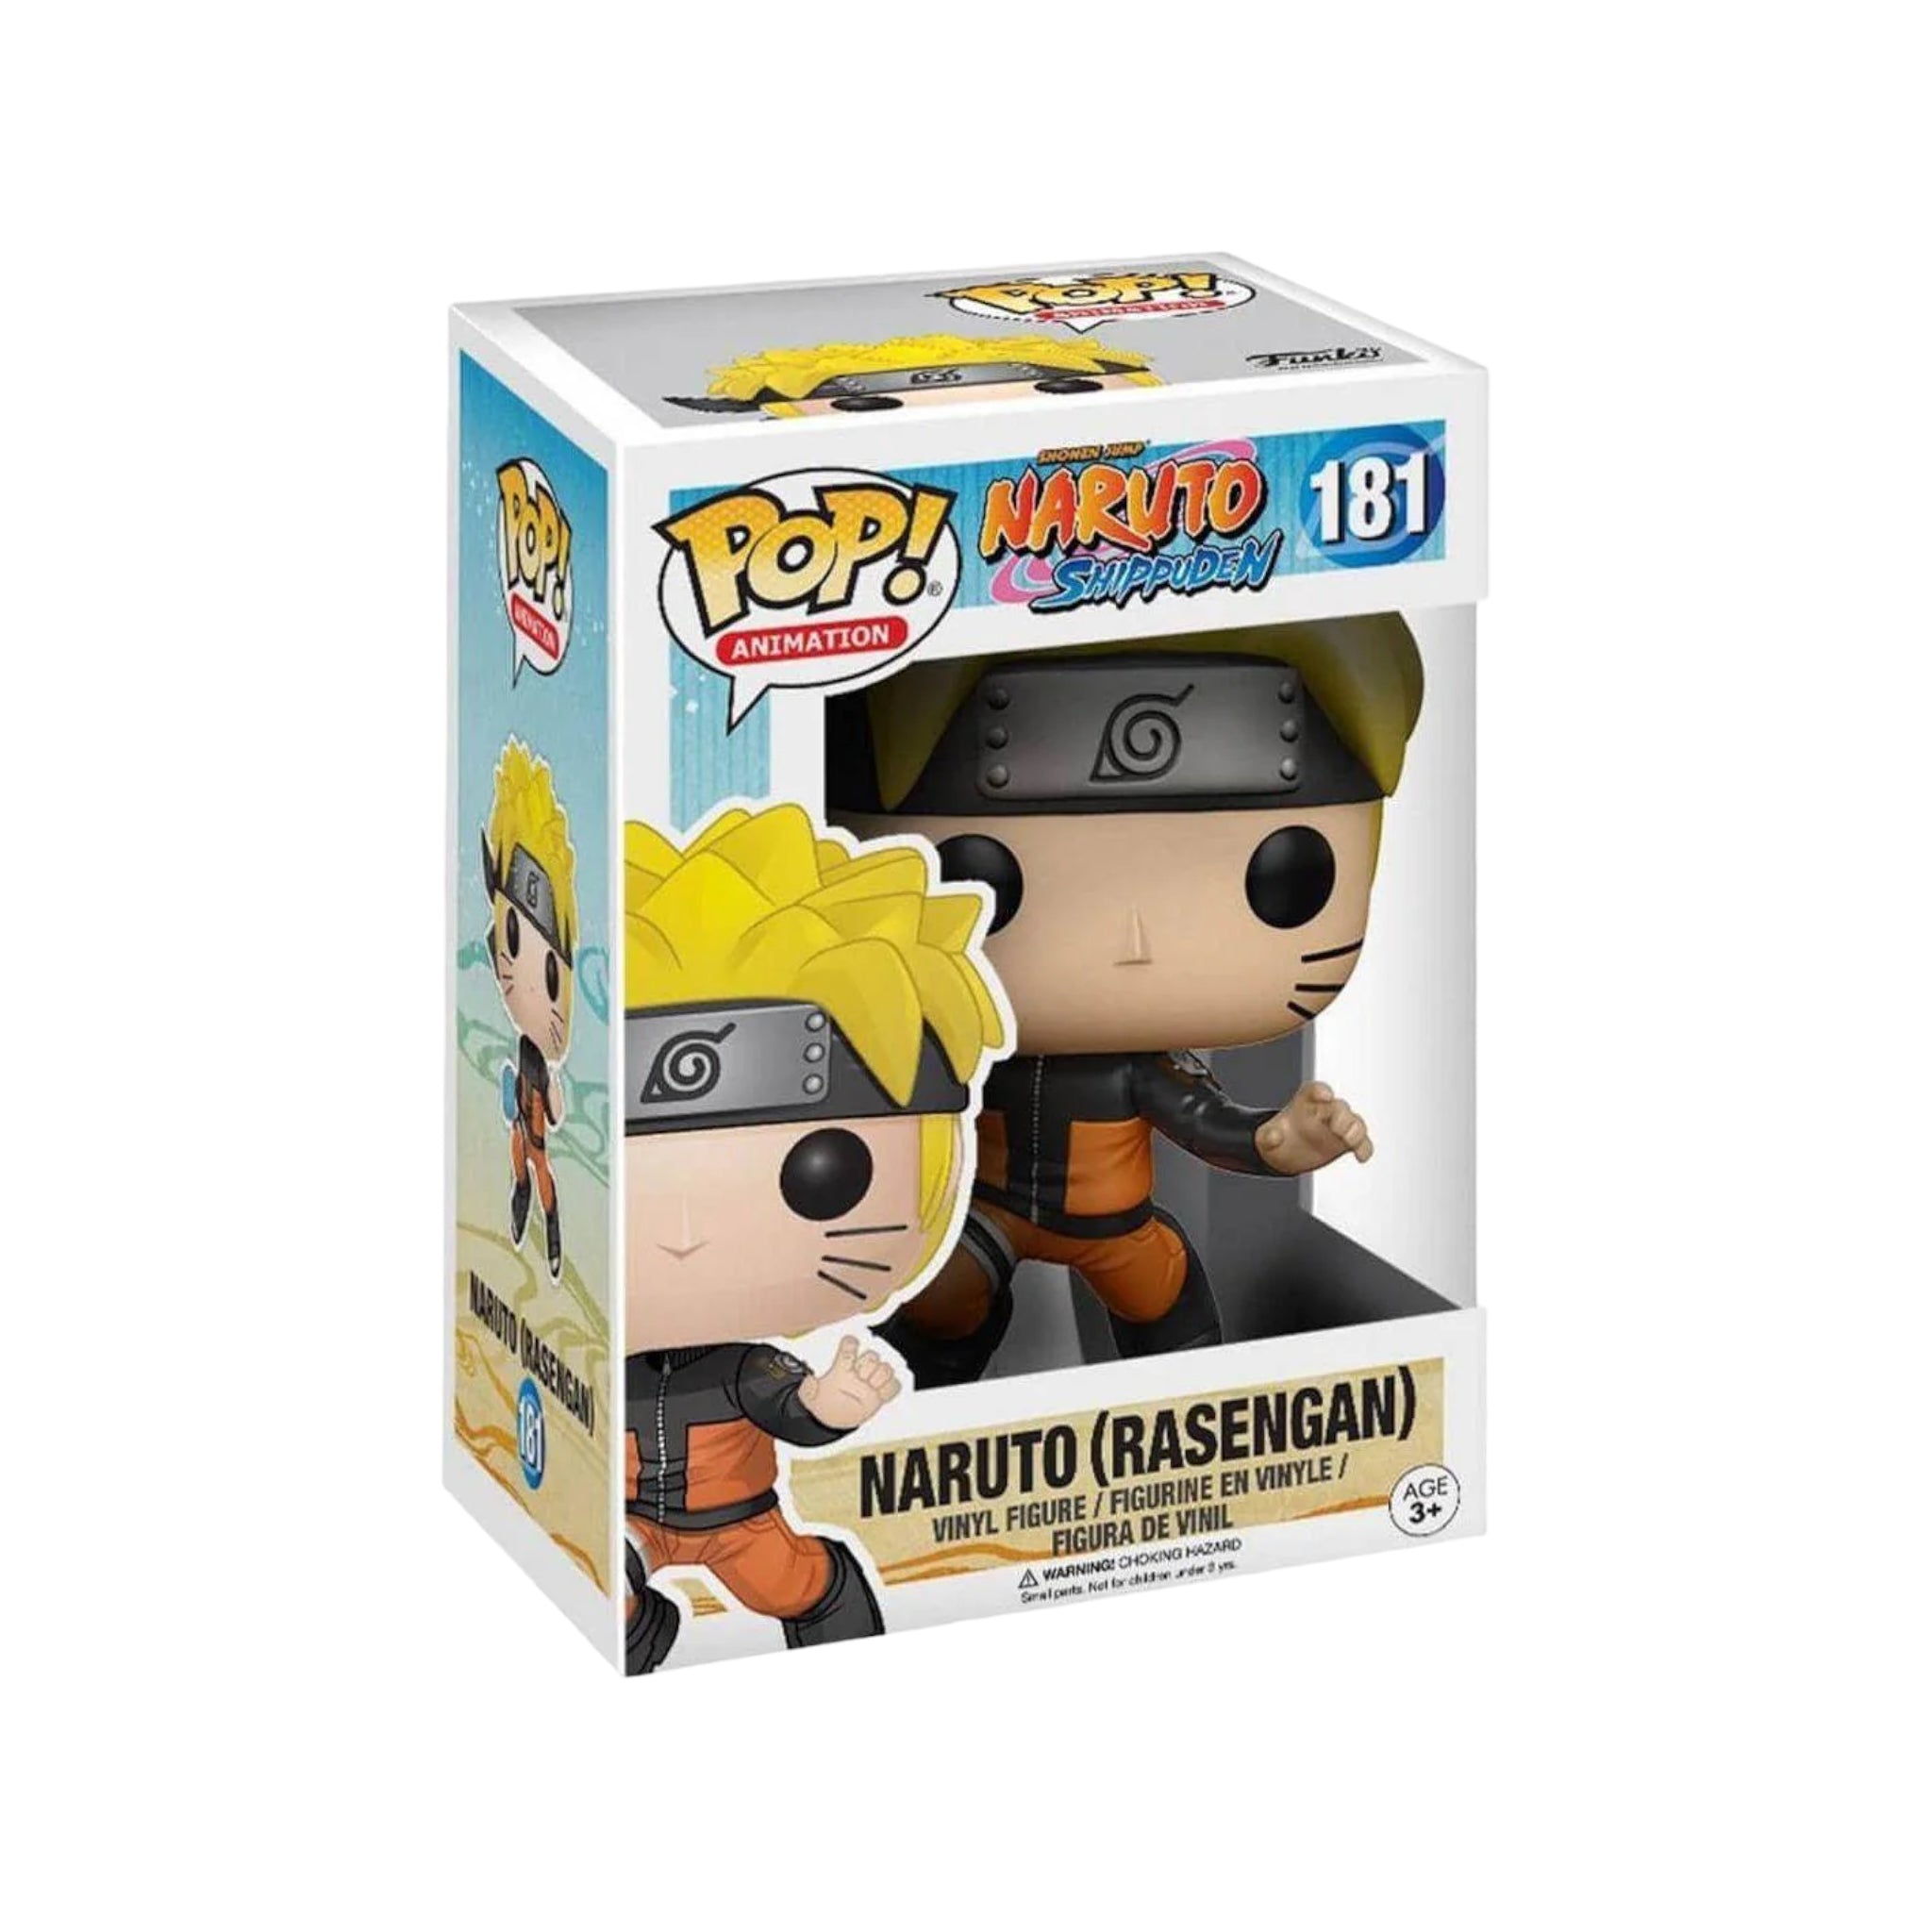 Naruto (Rasengan) #181 Funko Pop! - Naruto Shippuden